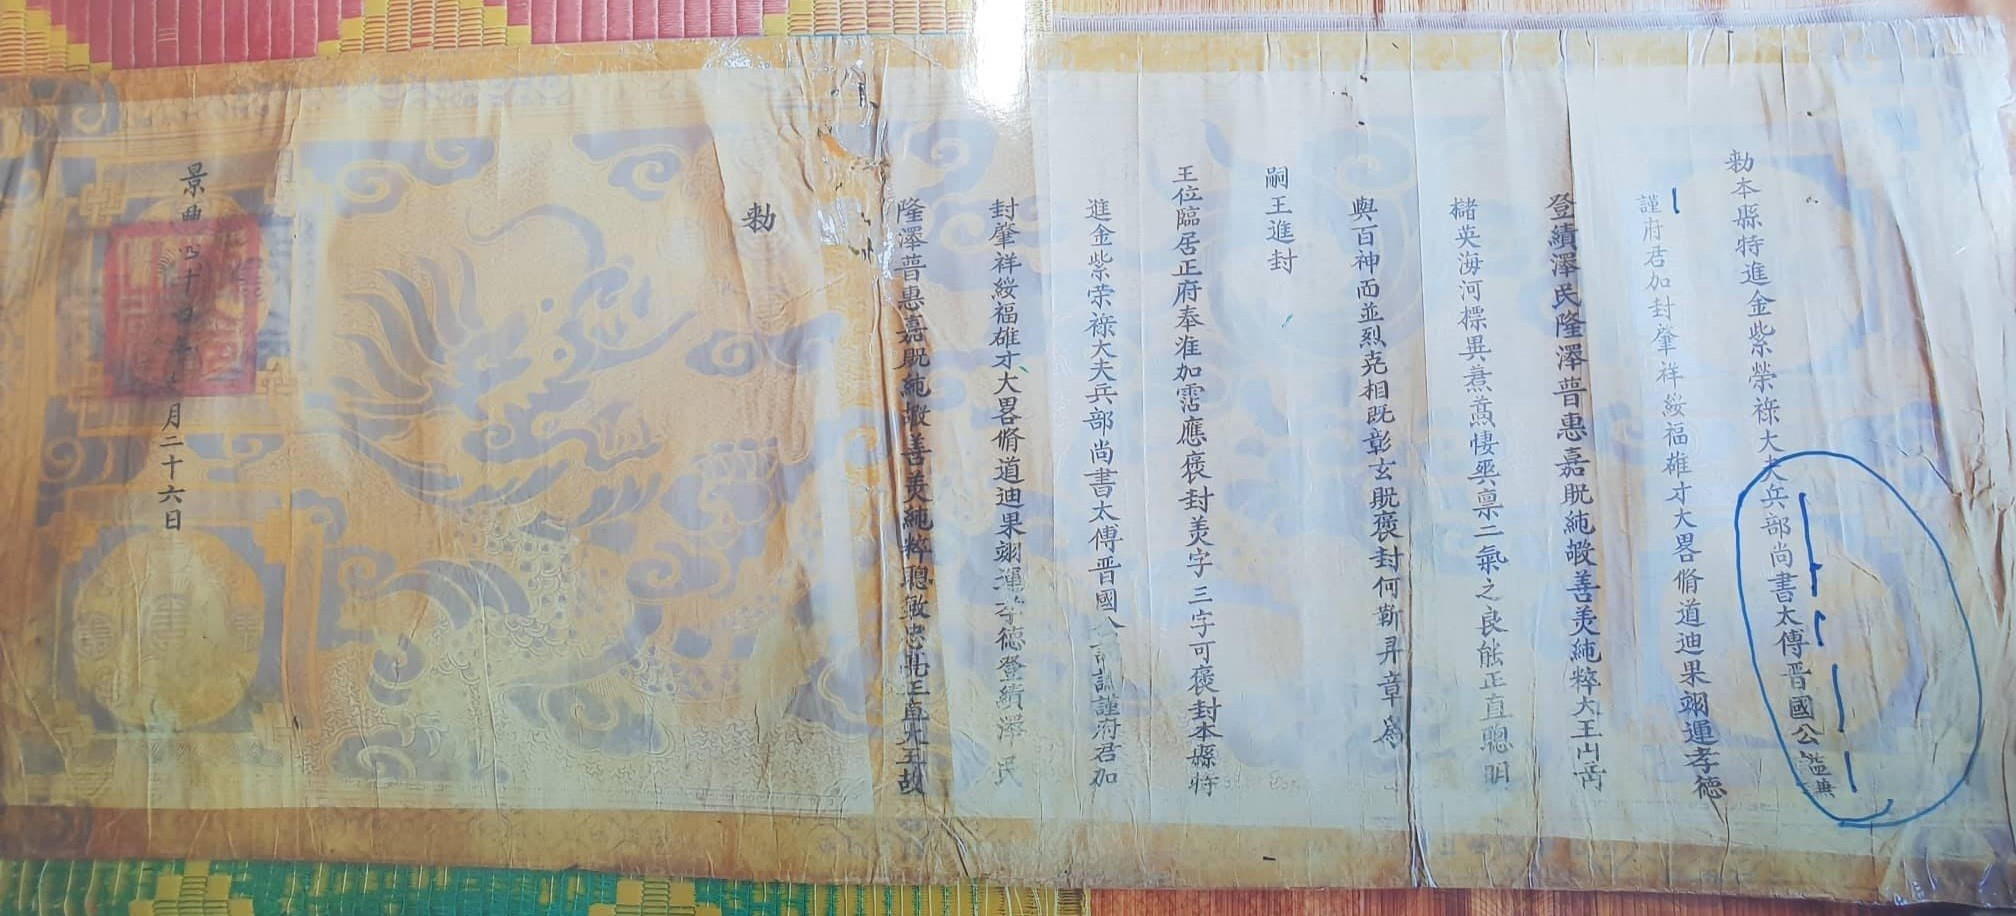 Sắc phong của đền Khai Long có ghi: Sắc ban cho vị thần nguyên là Binh bộ.